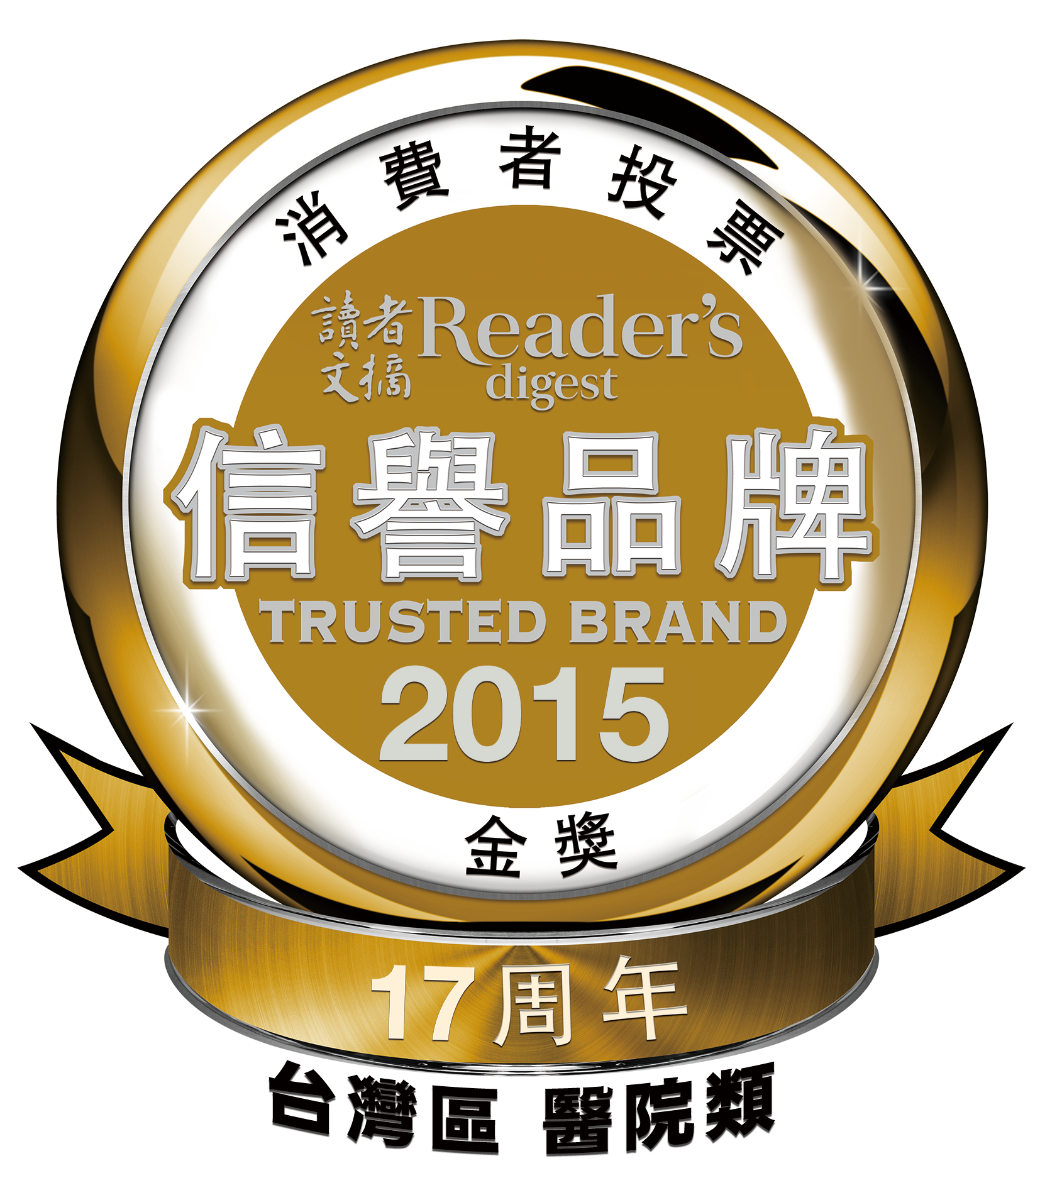 2015年讀者文摘信譽品牌金獎標章